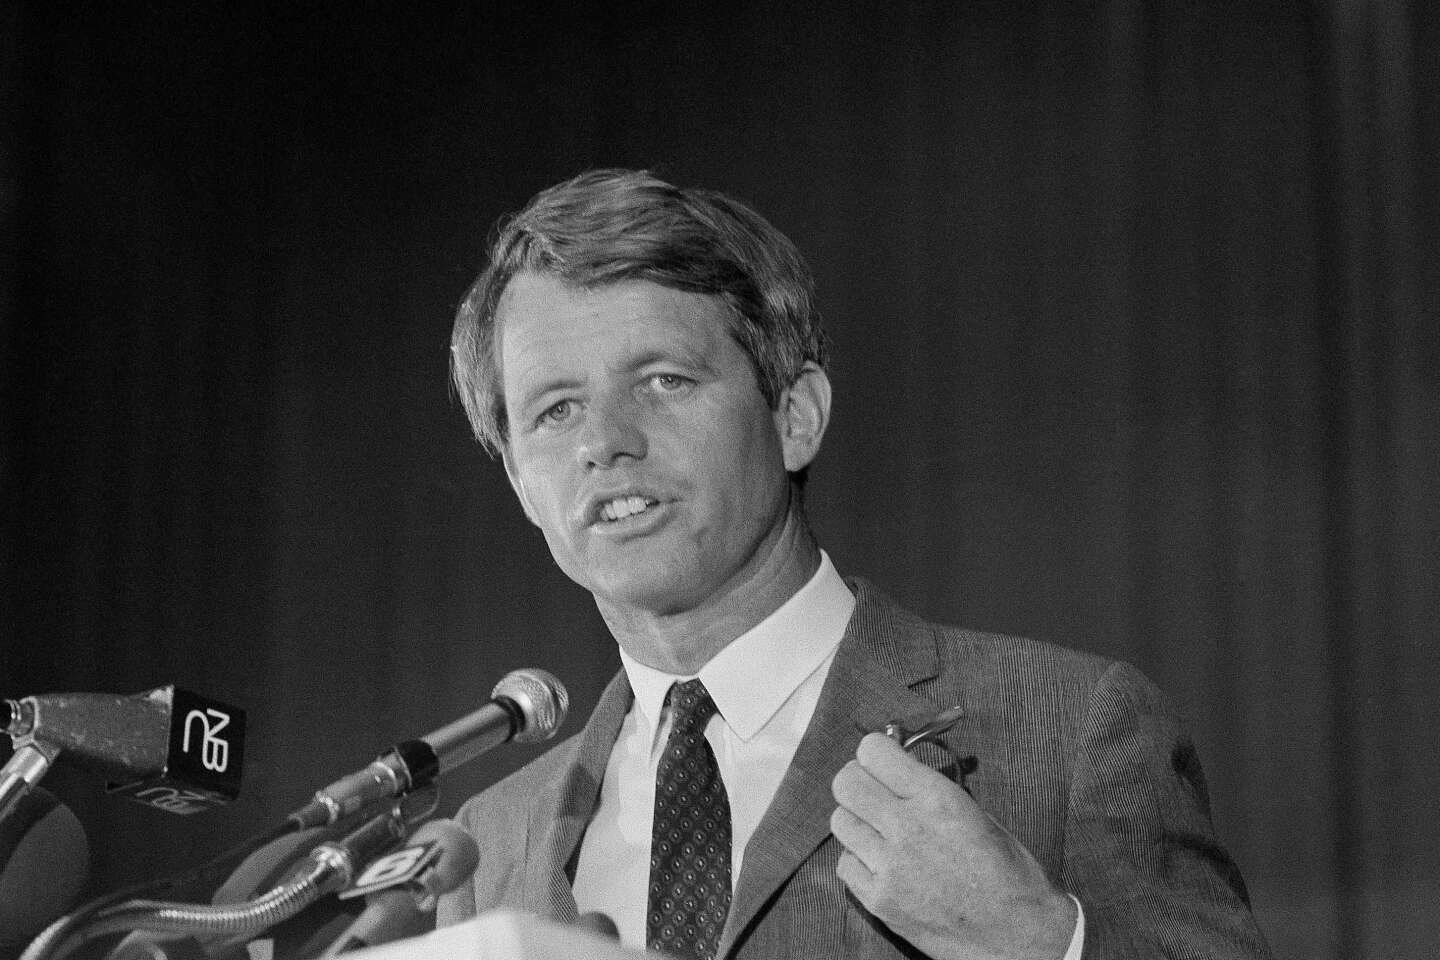 Etats Unis L’assassin De Robert Kennedy Frère Cadet De Jfk Sur La Voie De La Libération